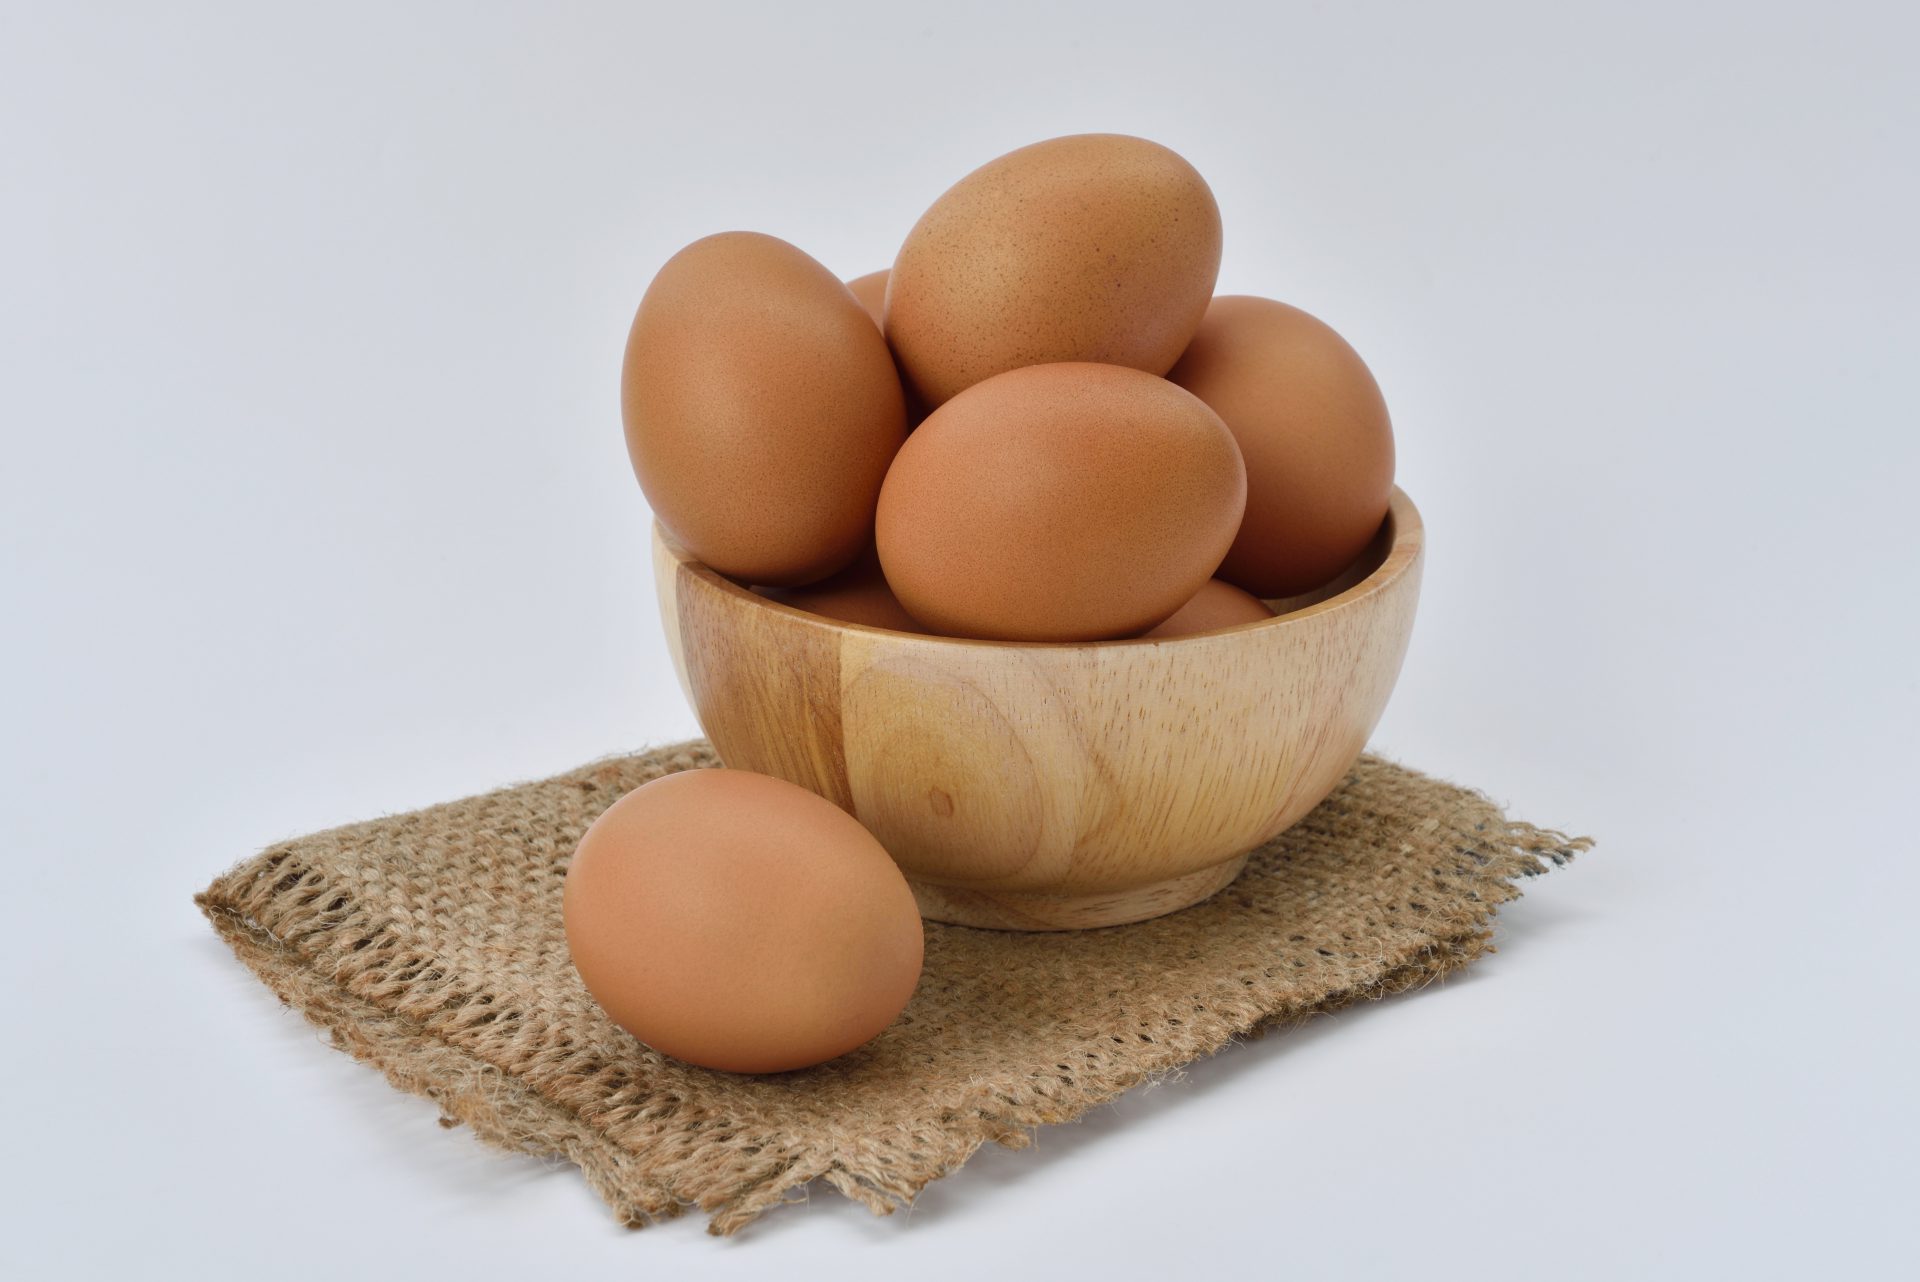 Basuh Dahulu Telur Sebelum Disimpan, Perlu Ke?